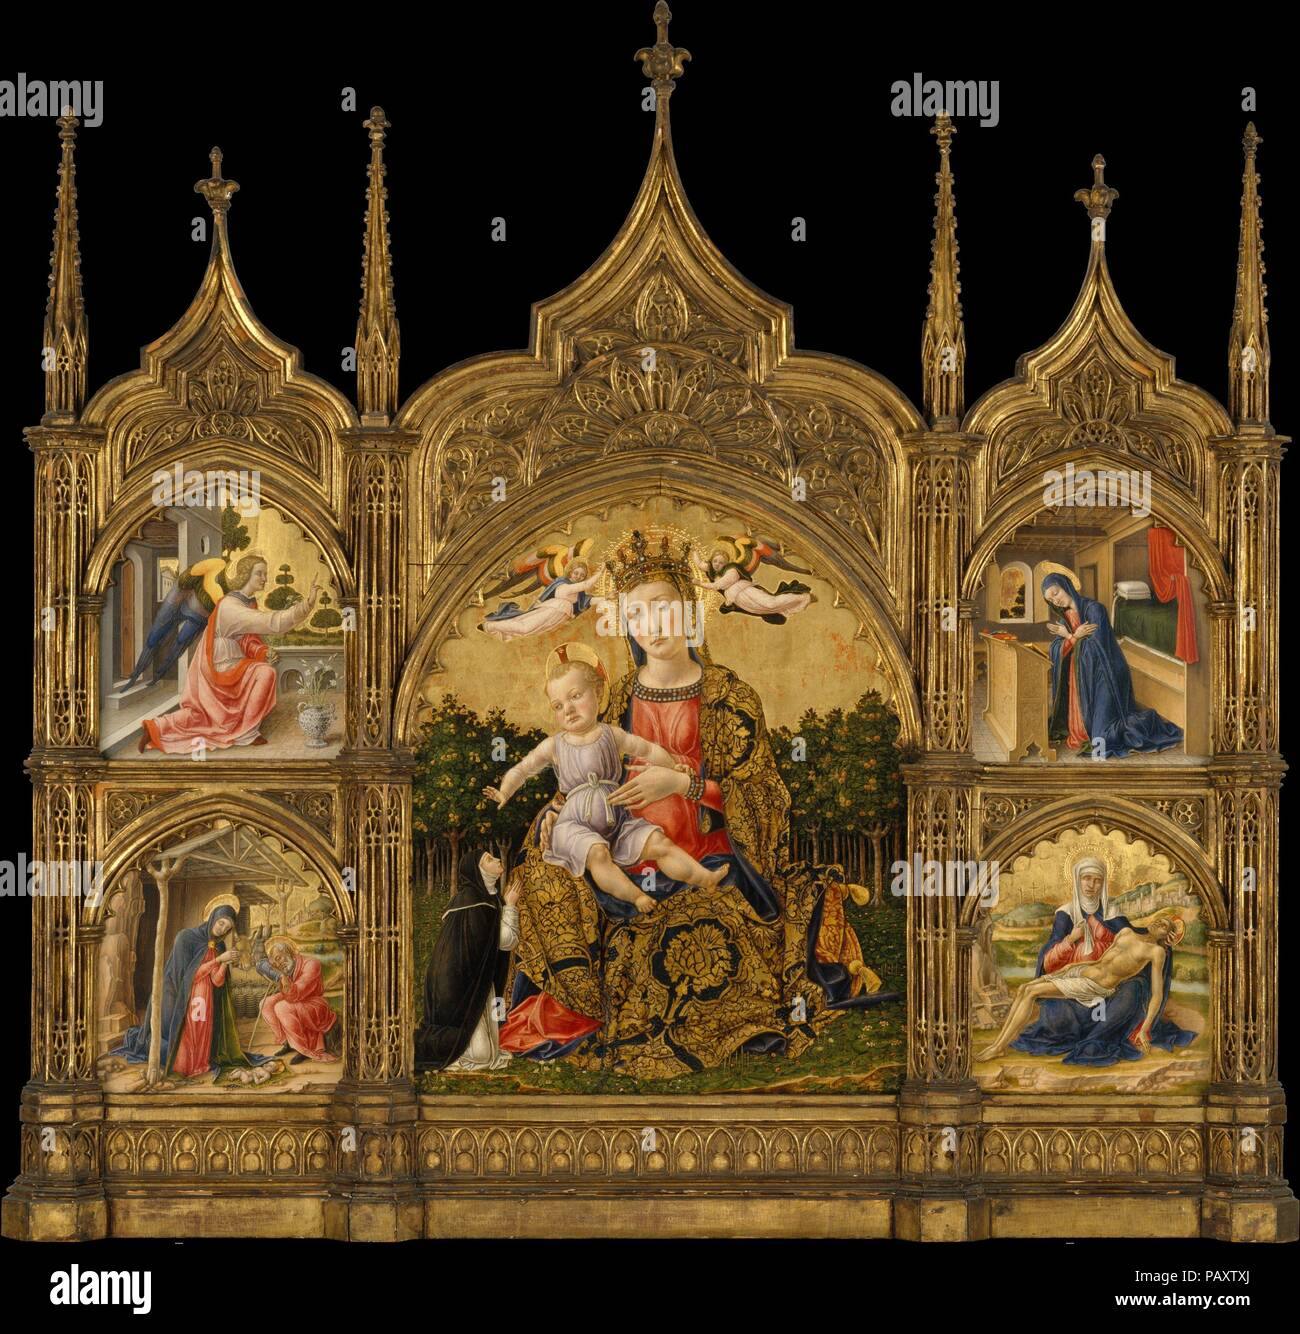 Die Madonna der Demut, die Verkündigung, die Geburt und die Pietà. Artist: Bartolomeo Vivarini (Italienisch, aktive Venedig 1450-91). Abmessungen: Zentrale Panel, Insgesamt 23 x 18 in. (58,4 x 45,7 cm); links Panel, insgesamt 22 3/8 x 9 1/2 in. (56,8 x 24,1 cm); rechts, insgesamt 22 1/4 x 9 3/8 in. (56,5 x 23,8 cm);. Datum: Ca. 1465. Die vivarini waren eine Familie von venezianischen Malern, deren produktiver Workshop in großen multi-tiered Altarbilder für Kirchen in der Region Venetien. Diese relativ kleine Triptychon war wahrscheinlich für private Frömmigkeit bestimmt. Die knienden Nonne, gekleidet wie ein Mem Stockfoto